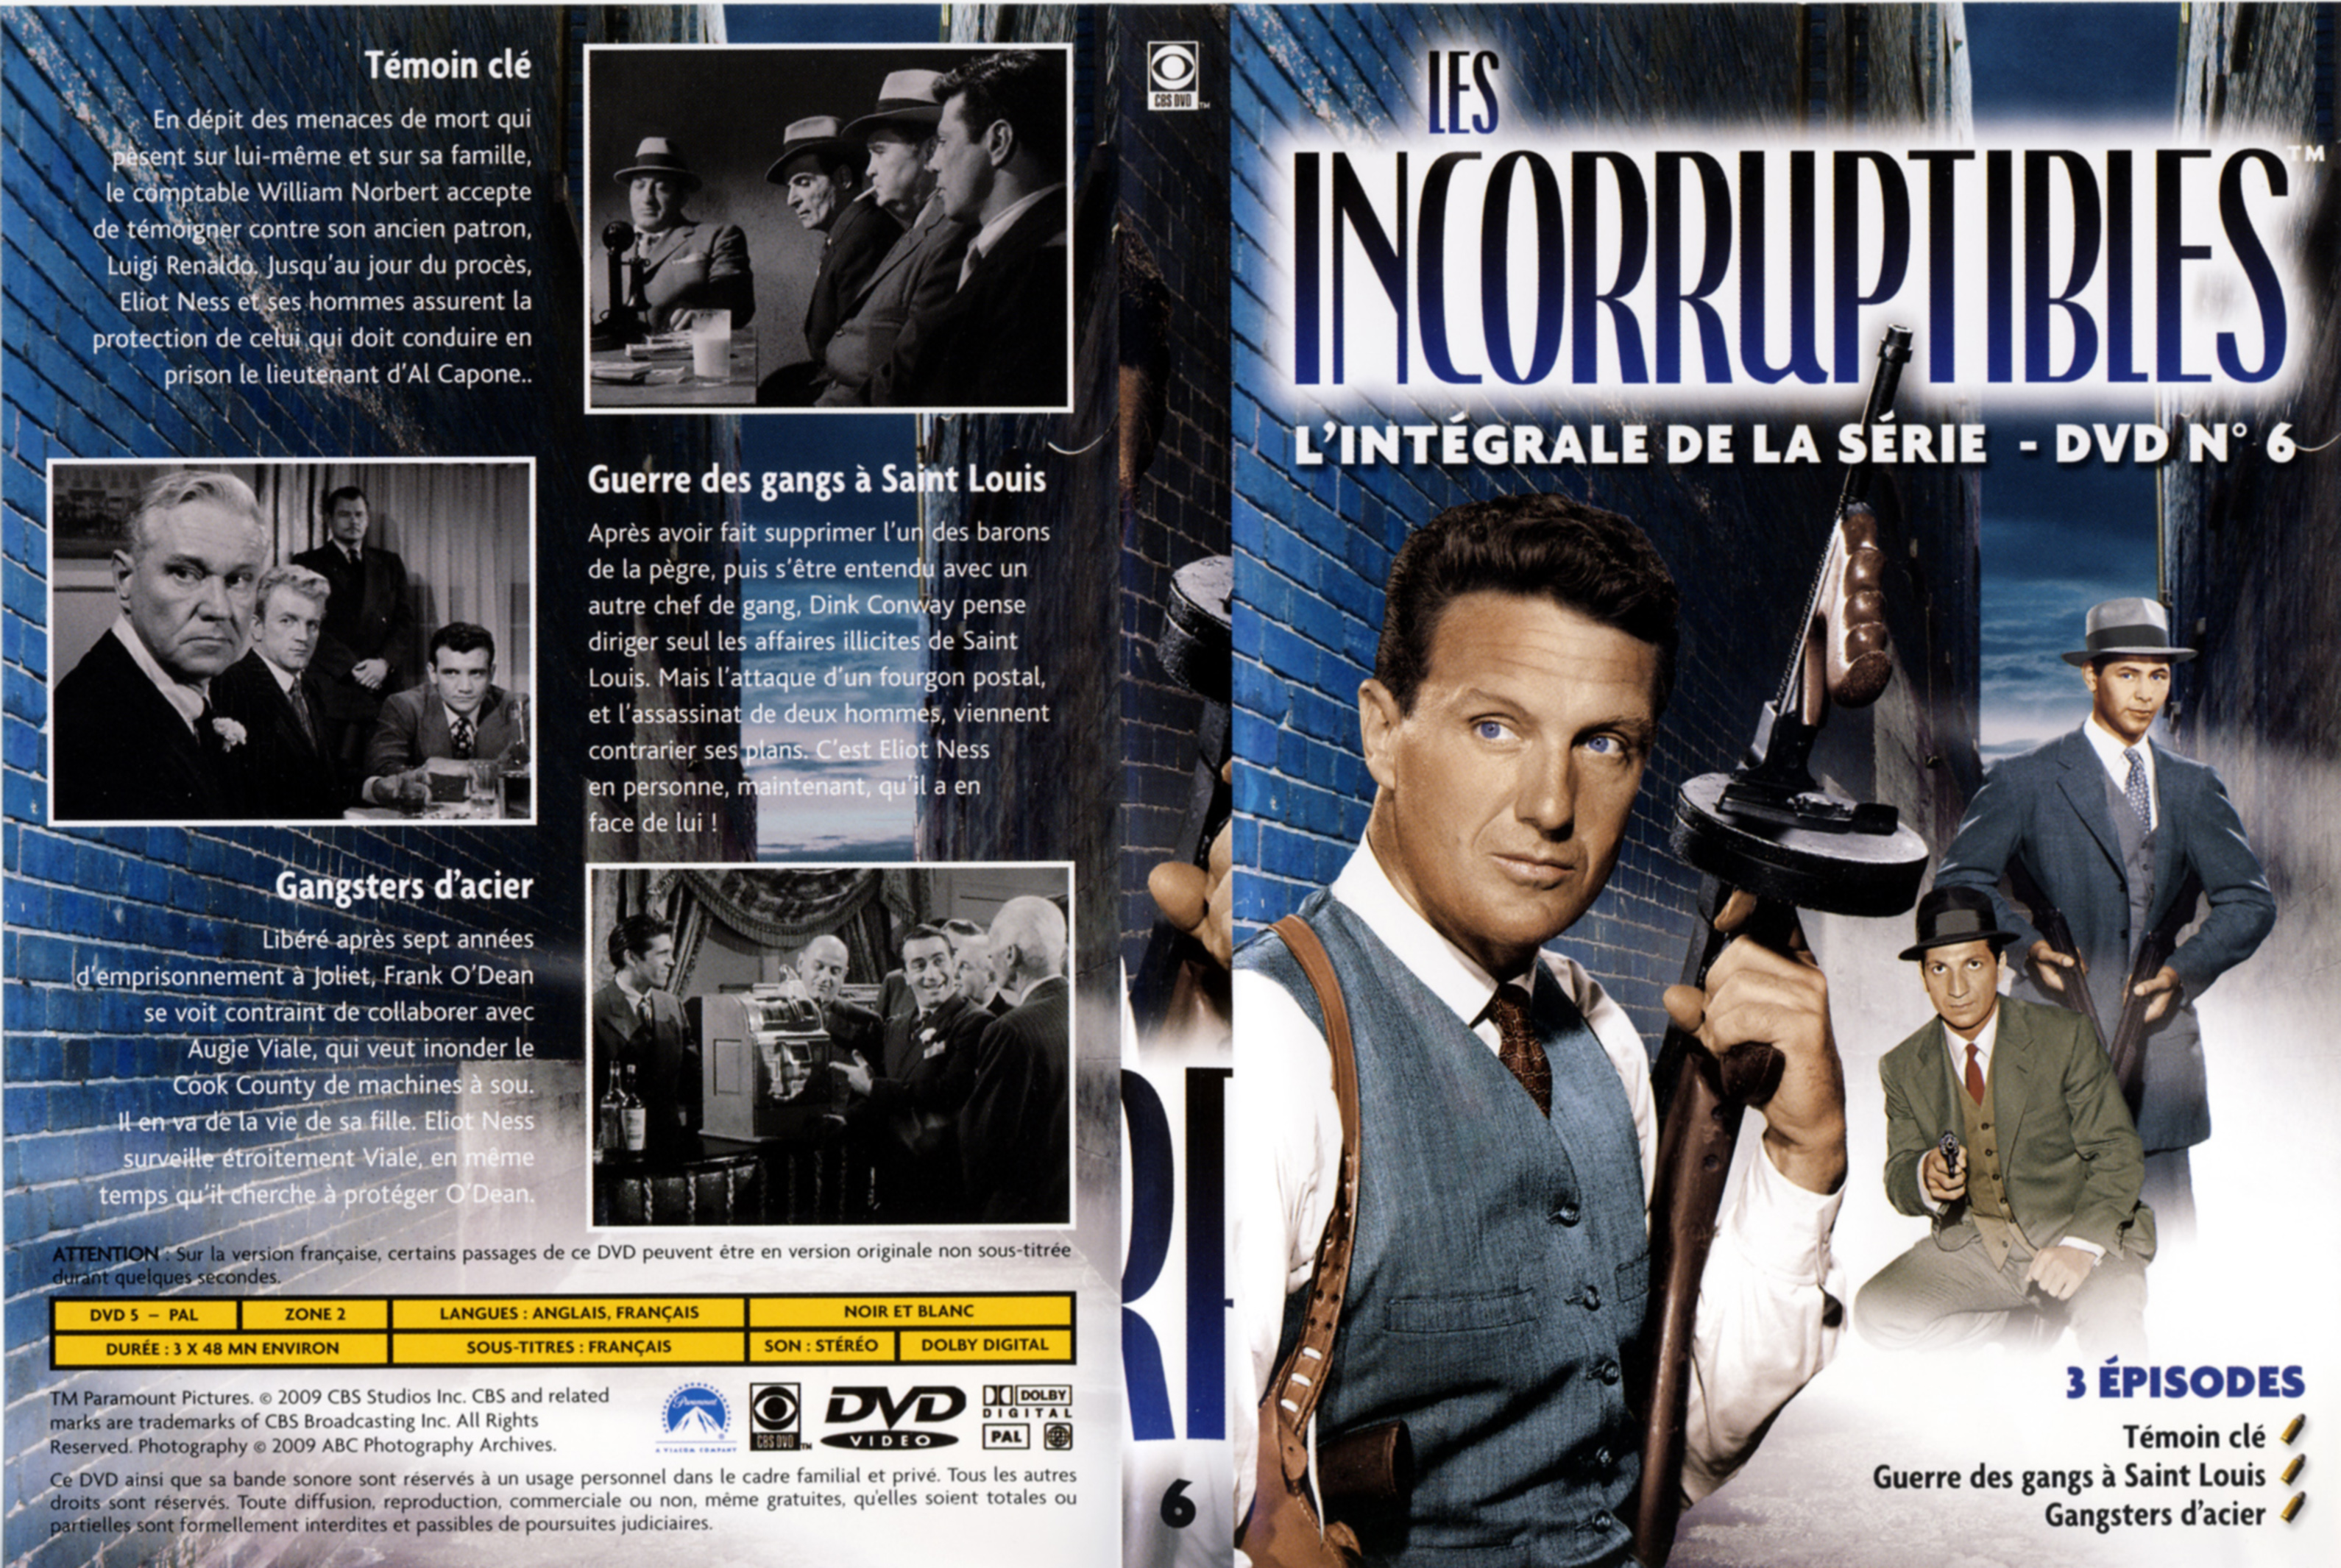 Jaquette DVD Les incorruptibles intgrale DVD 06